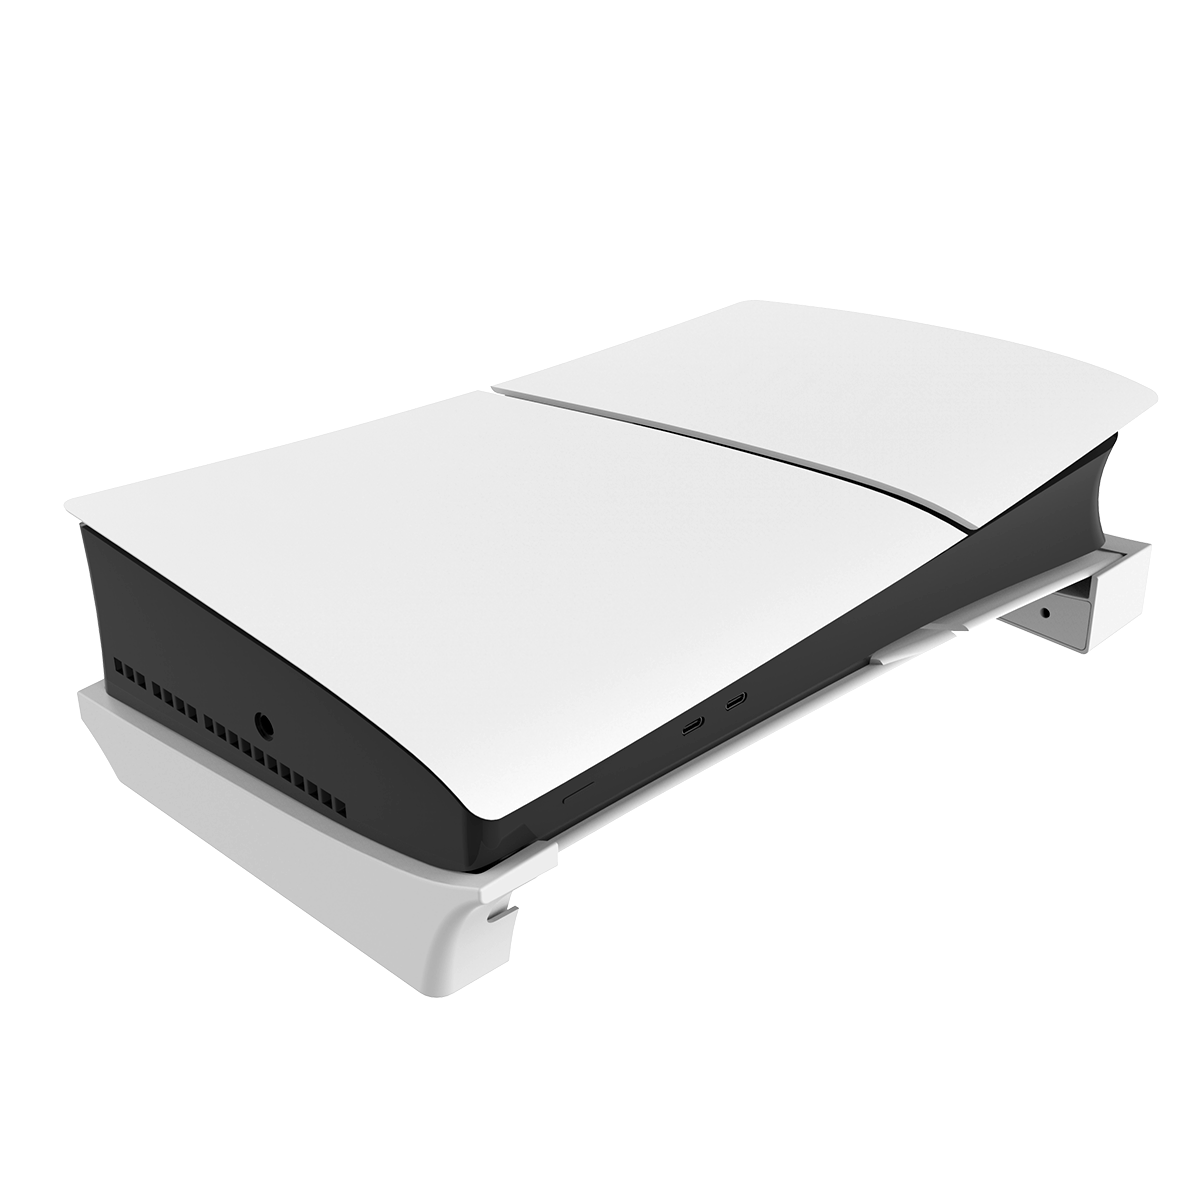 Горизонтальная подставка iPega для PS5 Slim, цвет белый, PG-P5S007